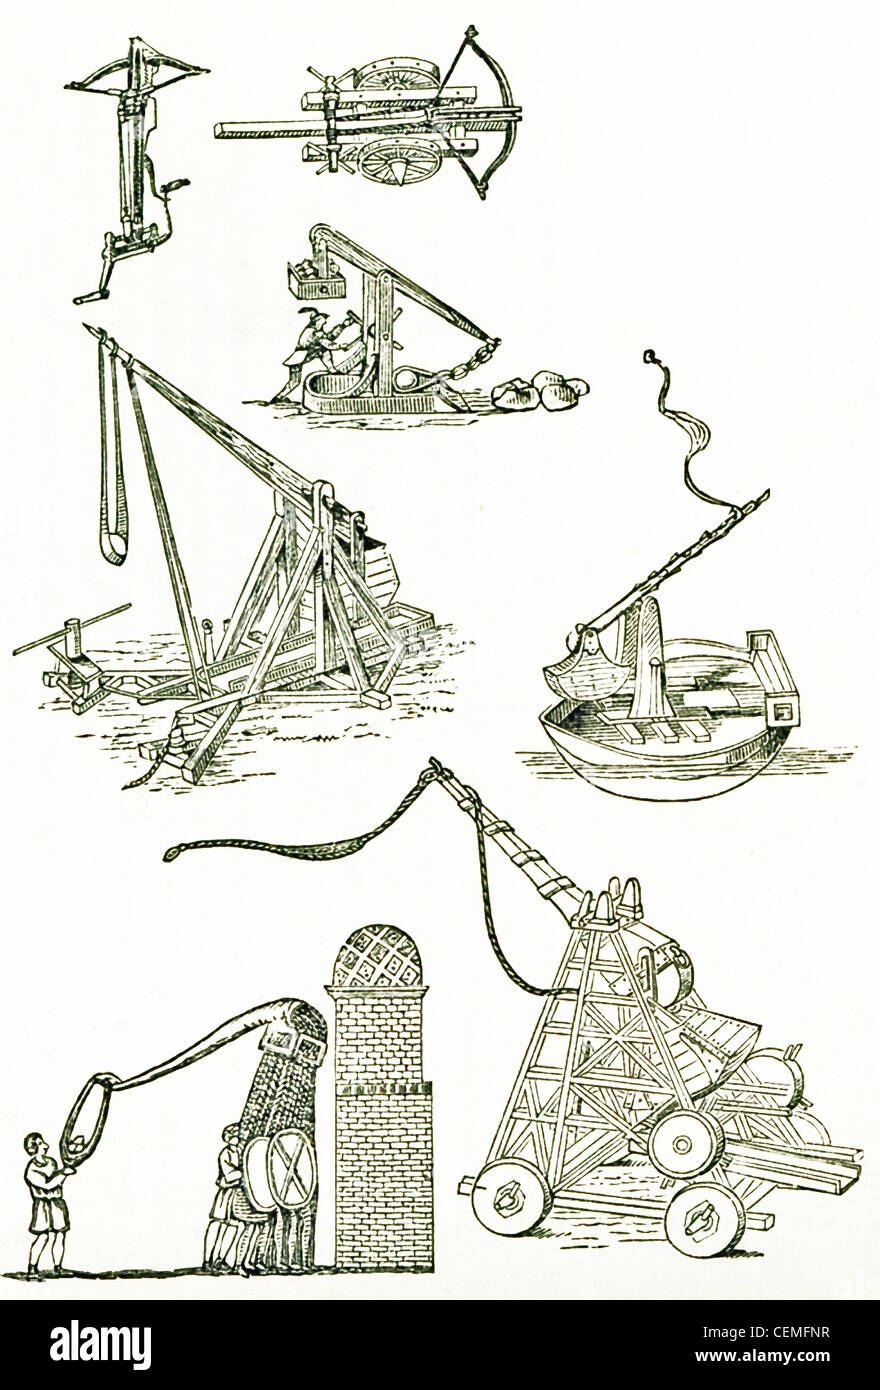 Qui illustrati sono Frank medievale motori di artiglieria. Frank si riferisce alla tribù germaniche della regione del Reno nella prima era cristiana. Foto Stock